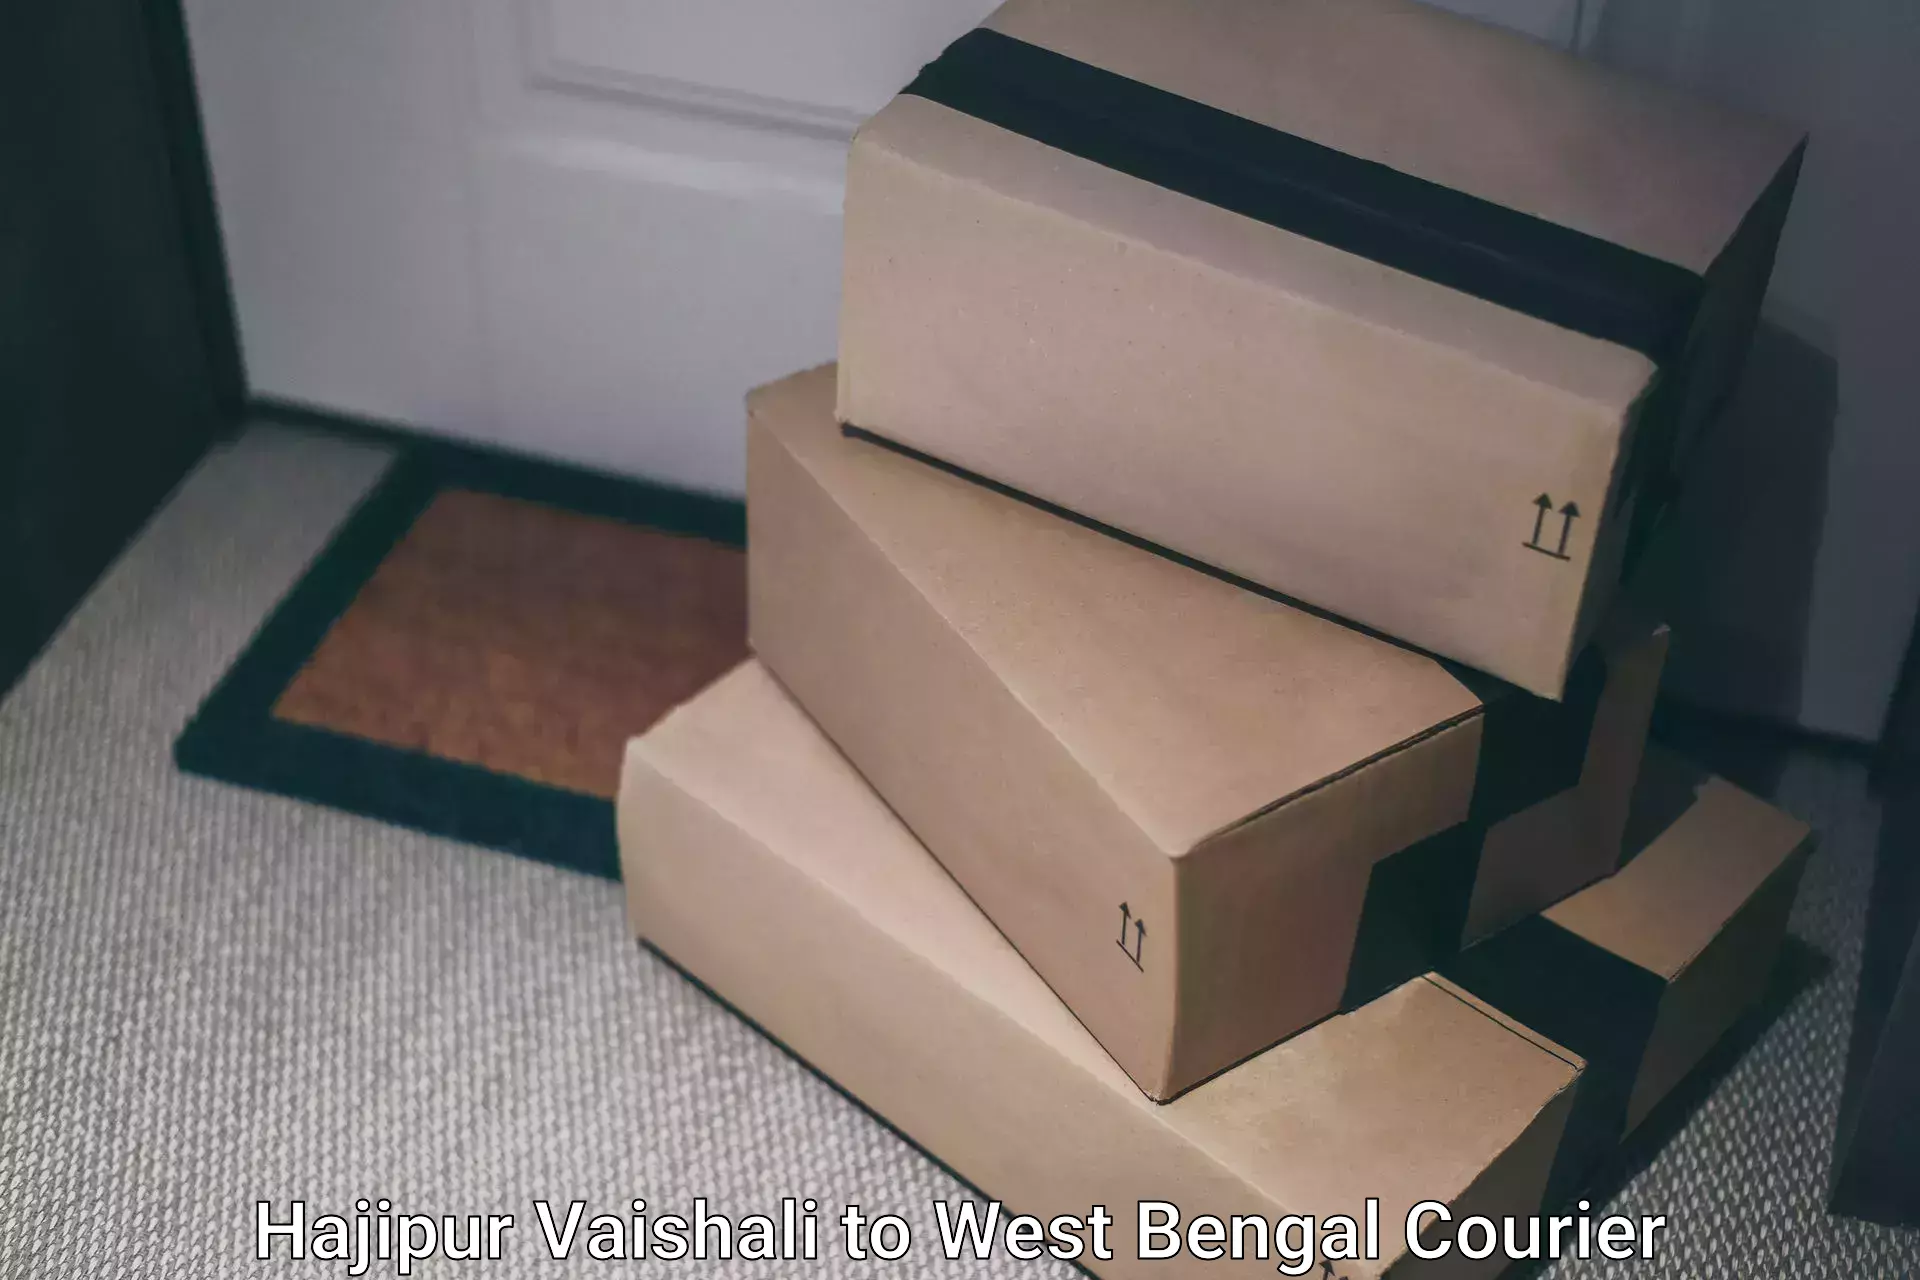 Fast-track shipping solutions Hajipur Vaishali to Maynaguri